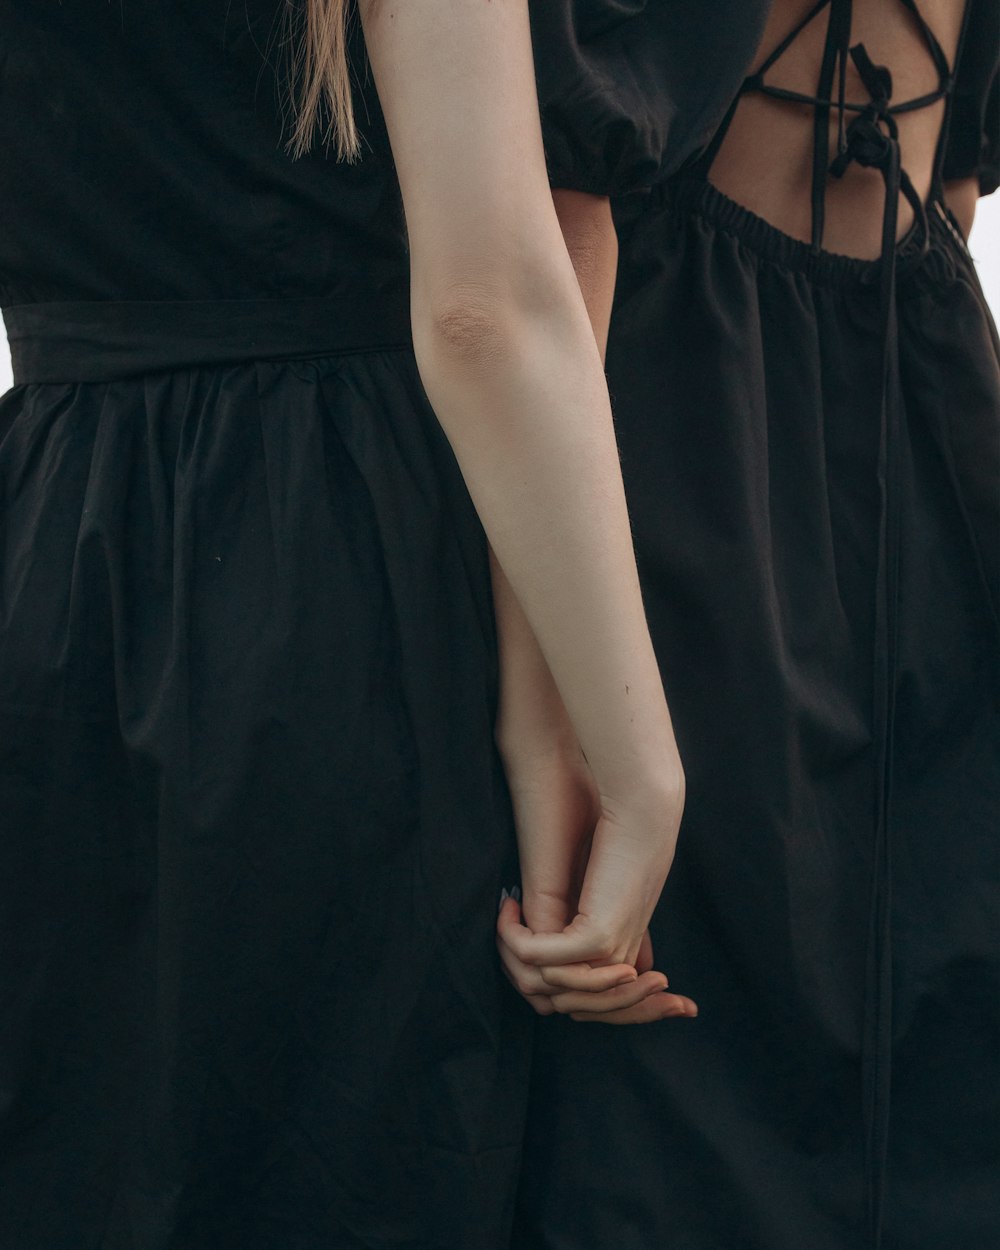 deux femmes debout l’une à côté de l’autre se tenant la main